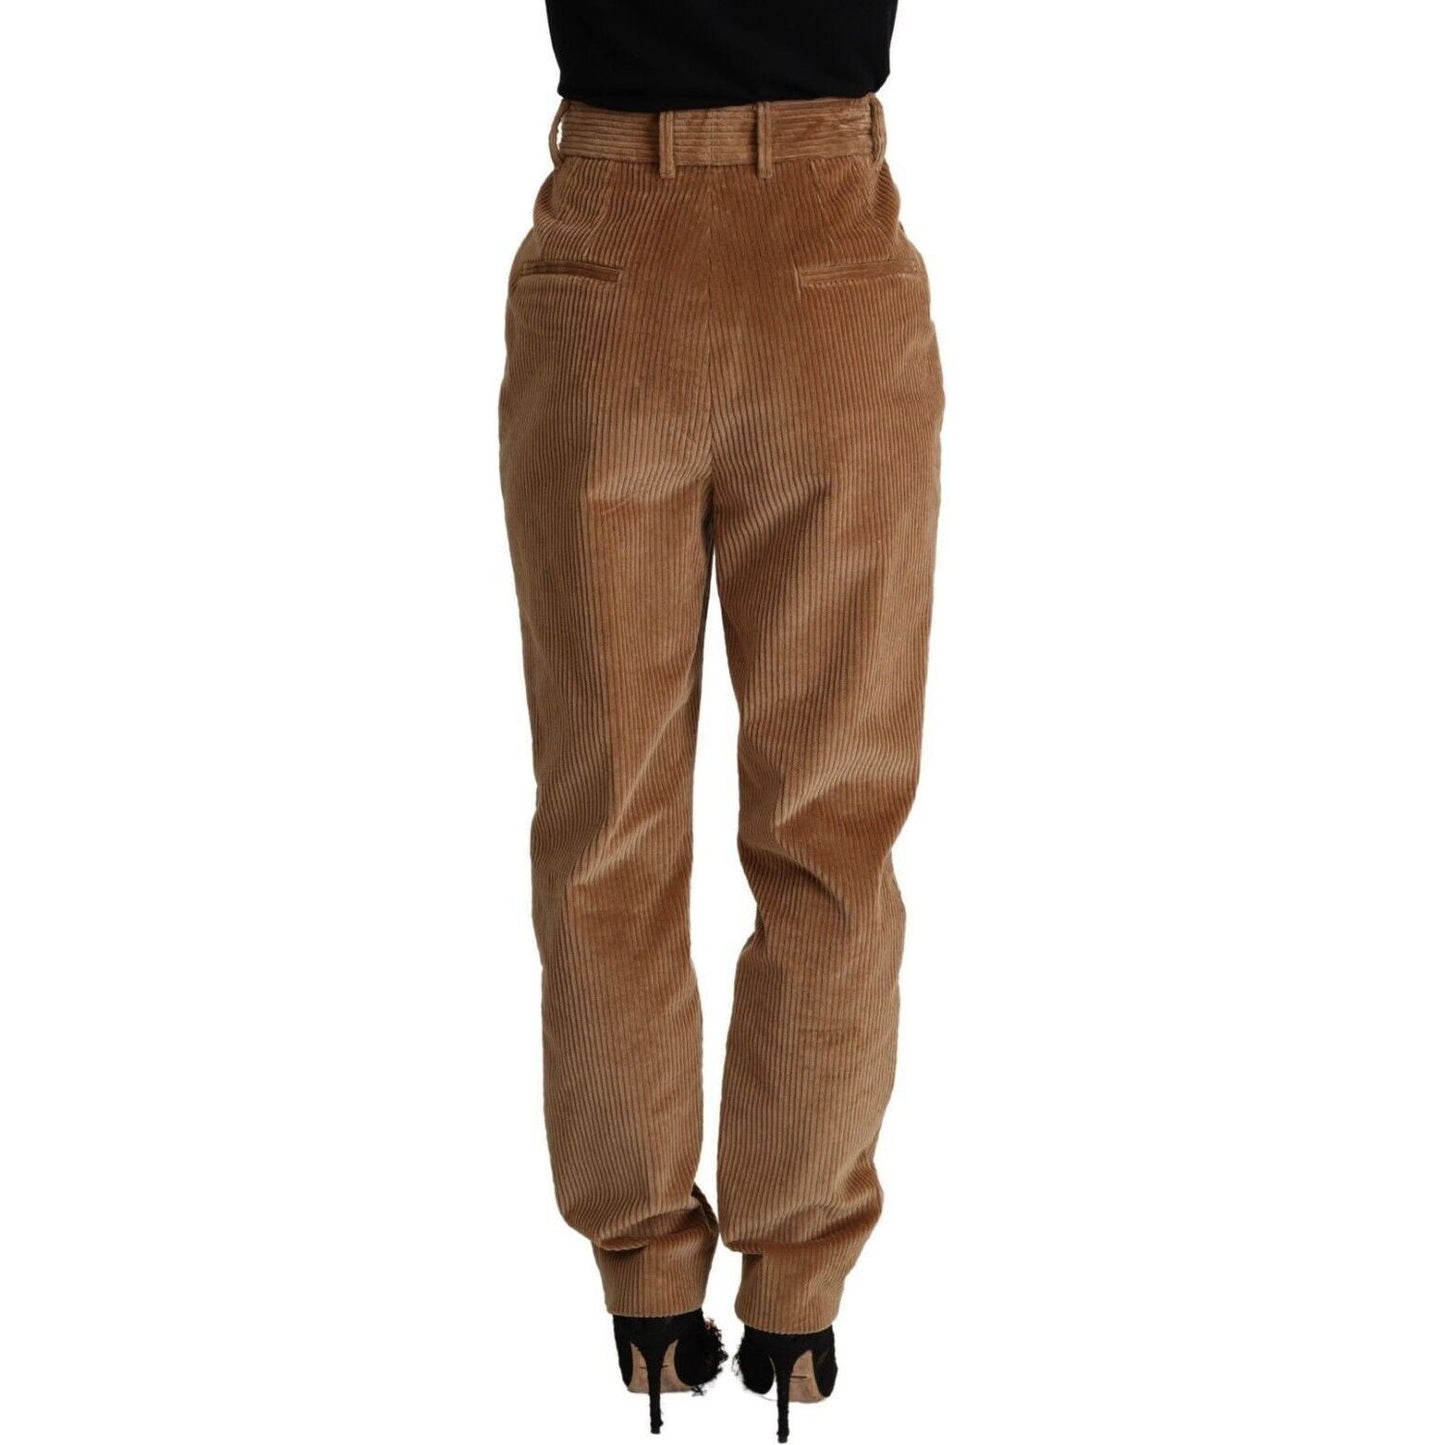 Dolce & Gabbana Chic High-Waisted Corduroy Skinny Pants brown-cotton-corduroy-high-waist-skinny-pants